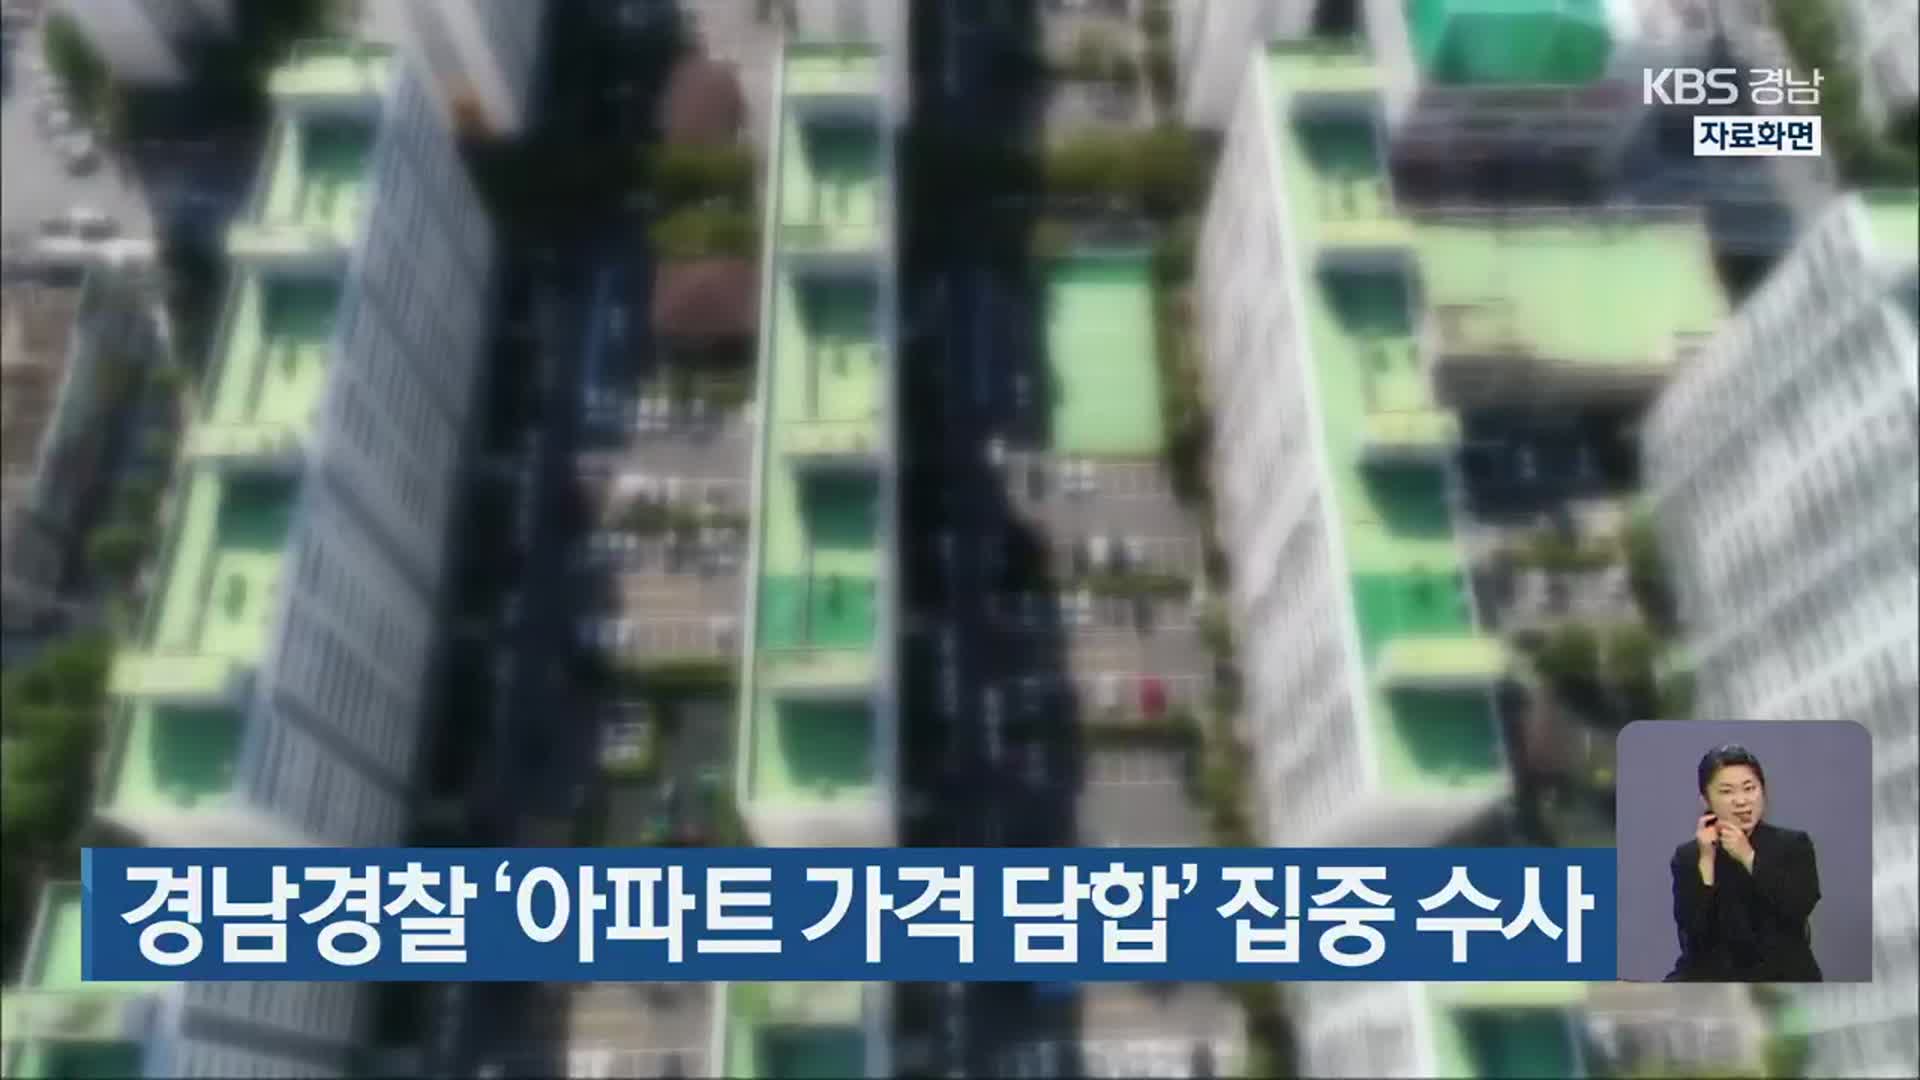 경남경찰 ‘아파트 가격 담합’ 집중 수사